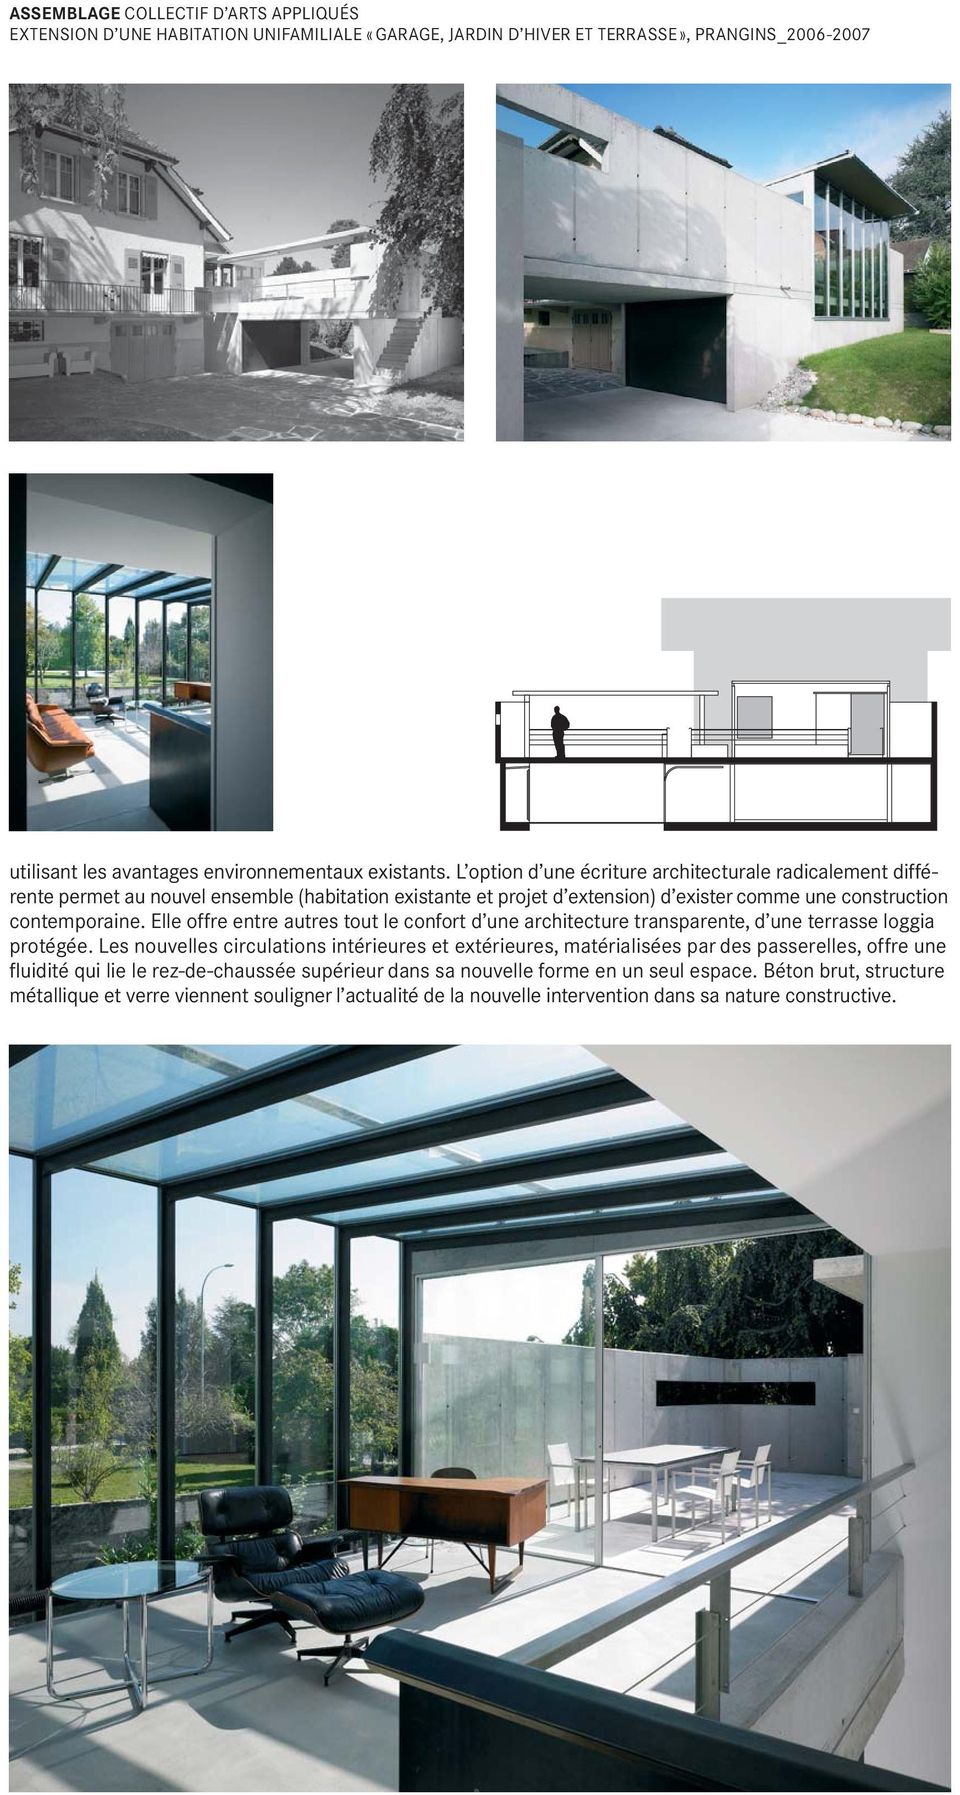 Elle offre entre autres tout le confort d une architecture transparente, d une terrasse loggia protégée.